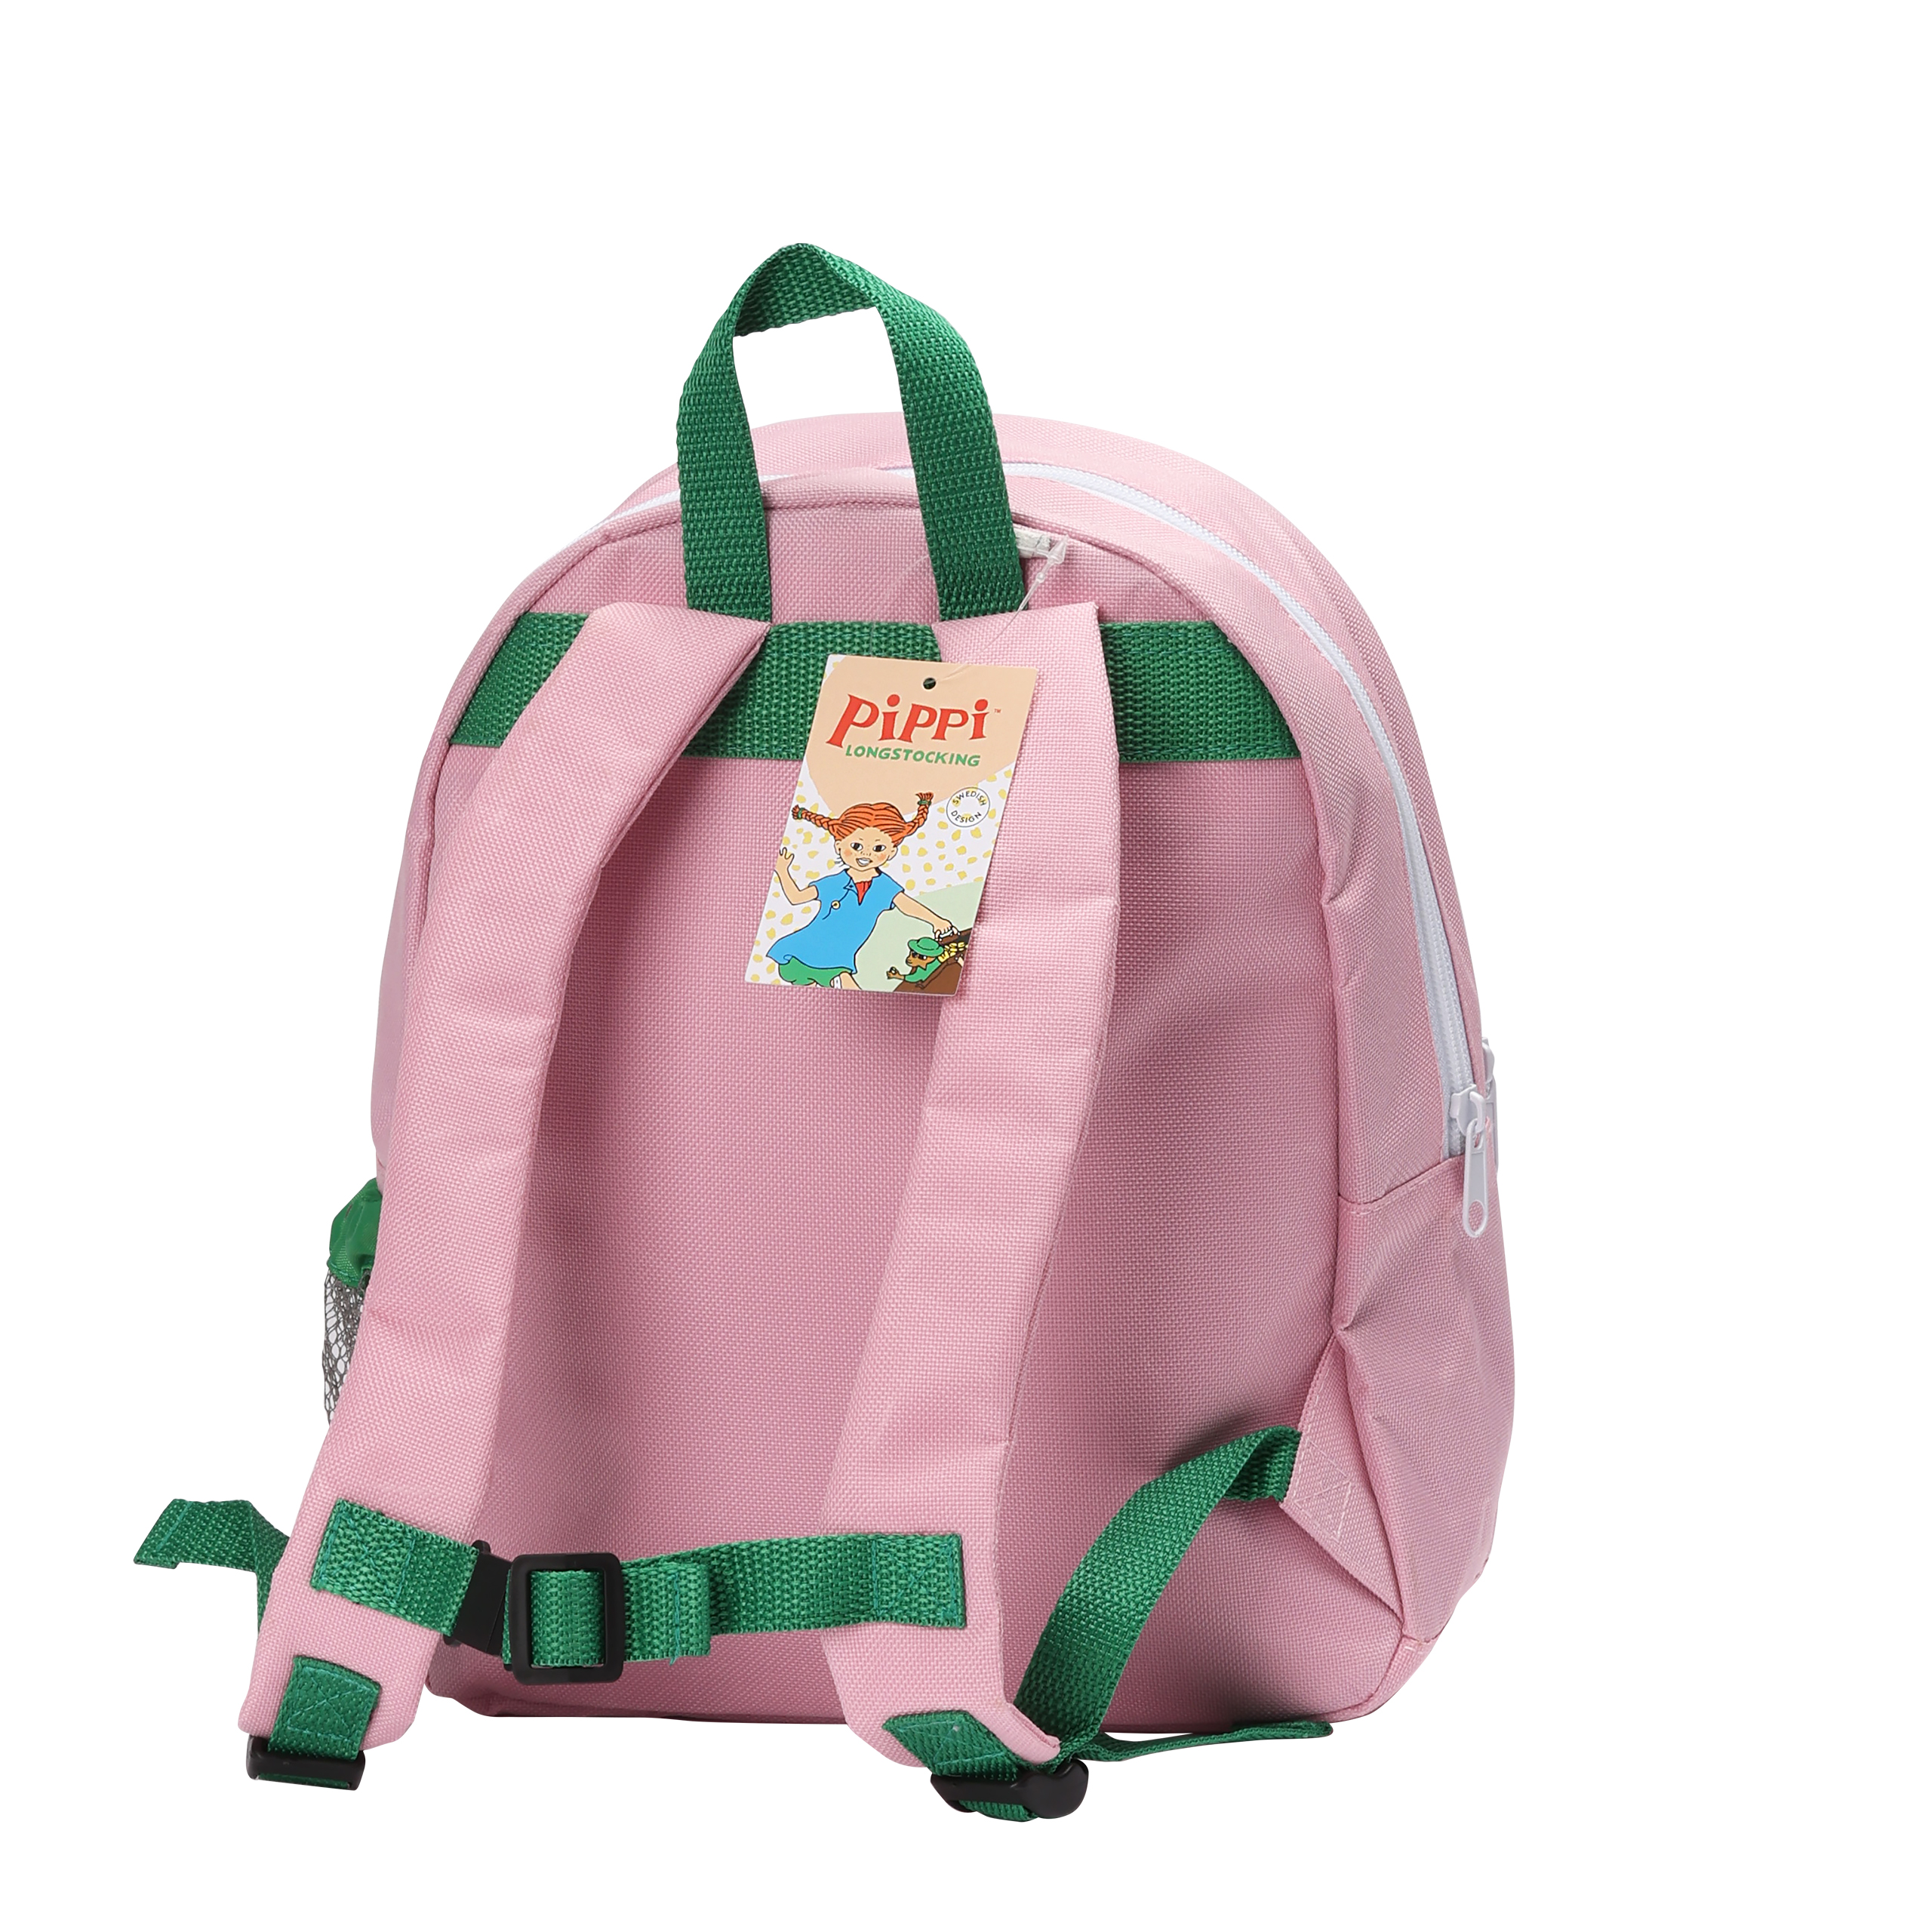 Pippi pippi kids bag backpack pink